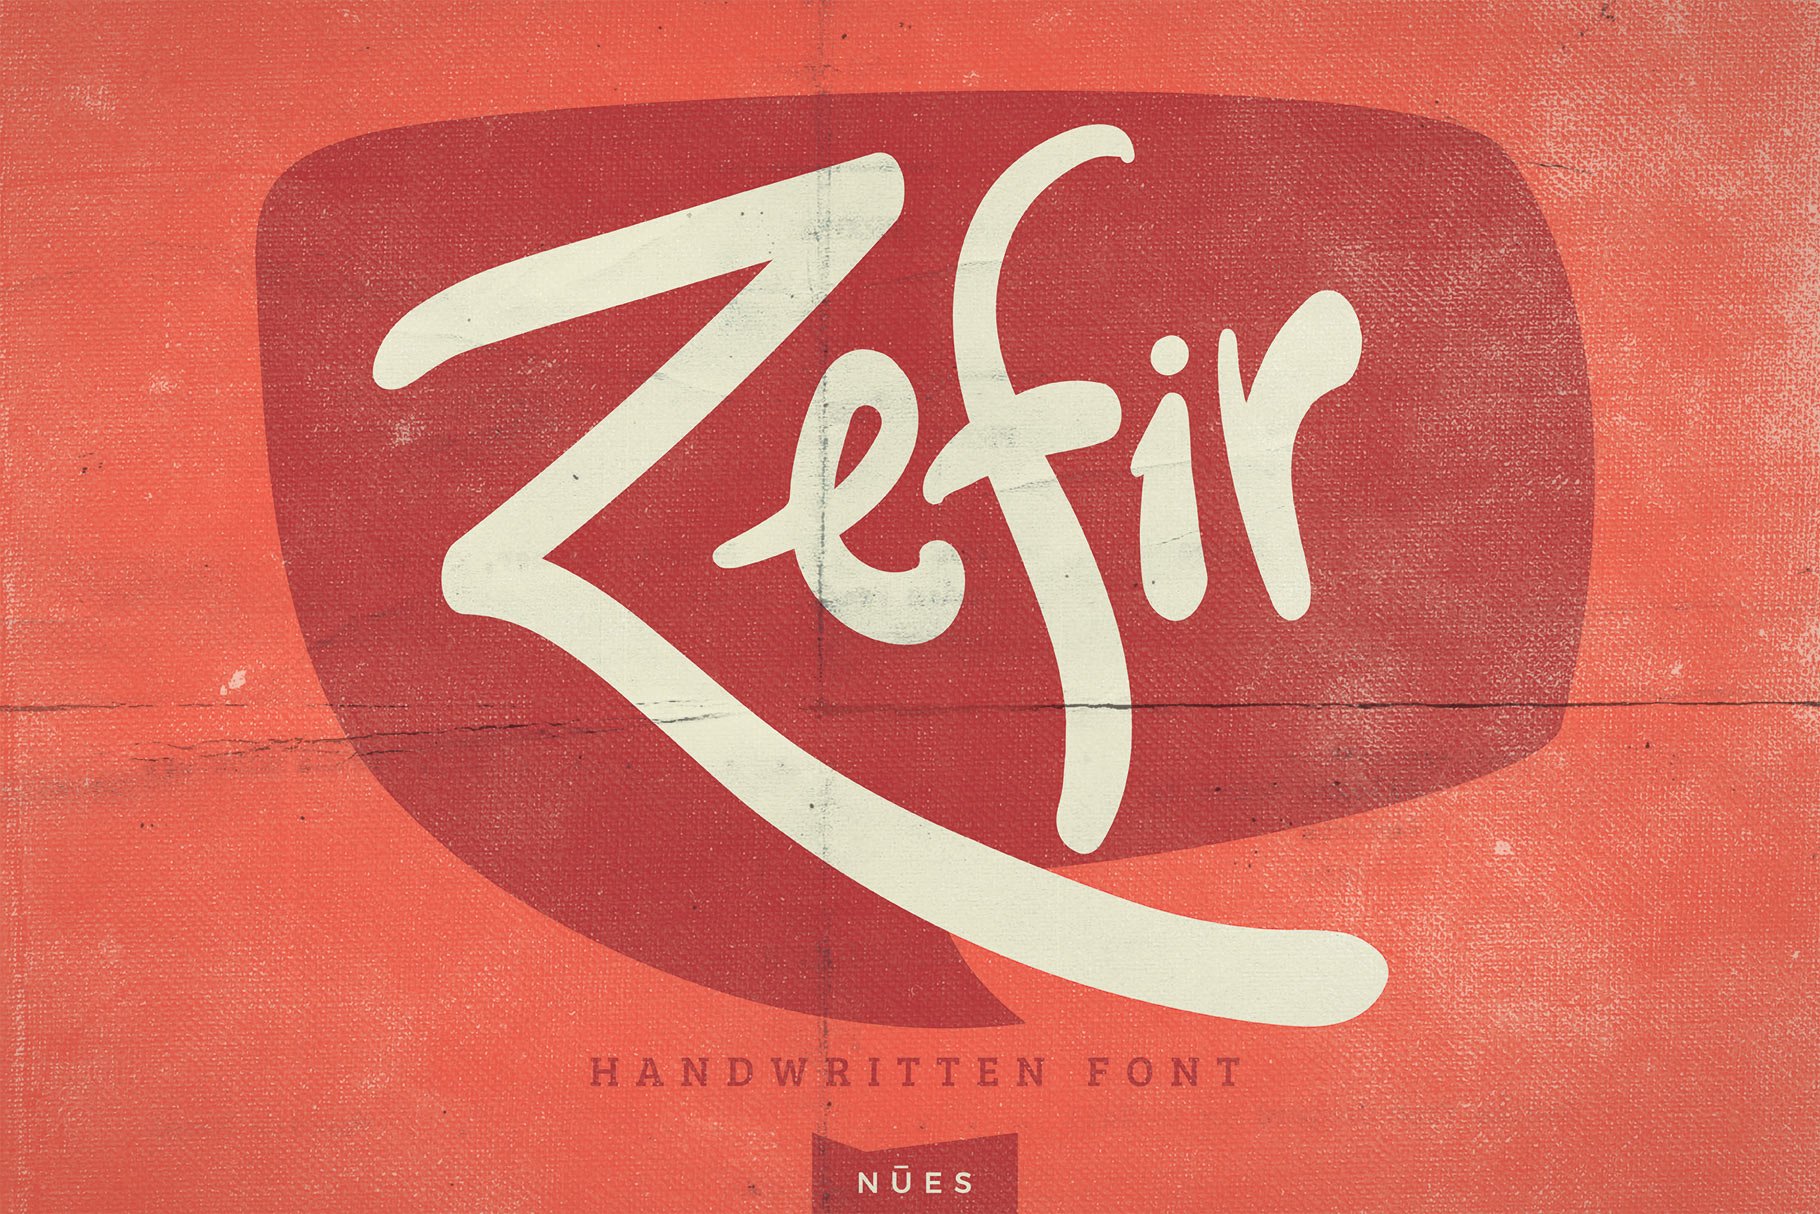 Zefir Script Font cover image.